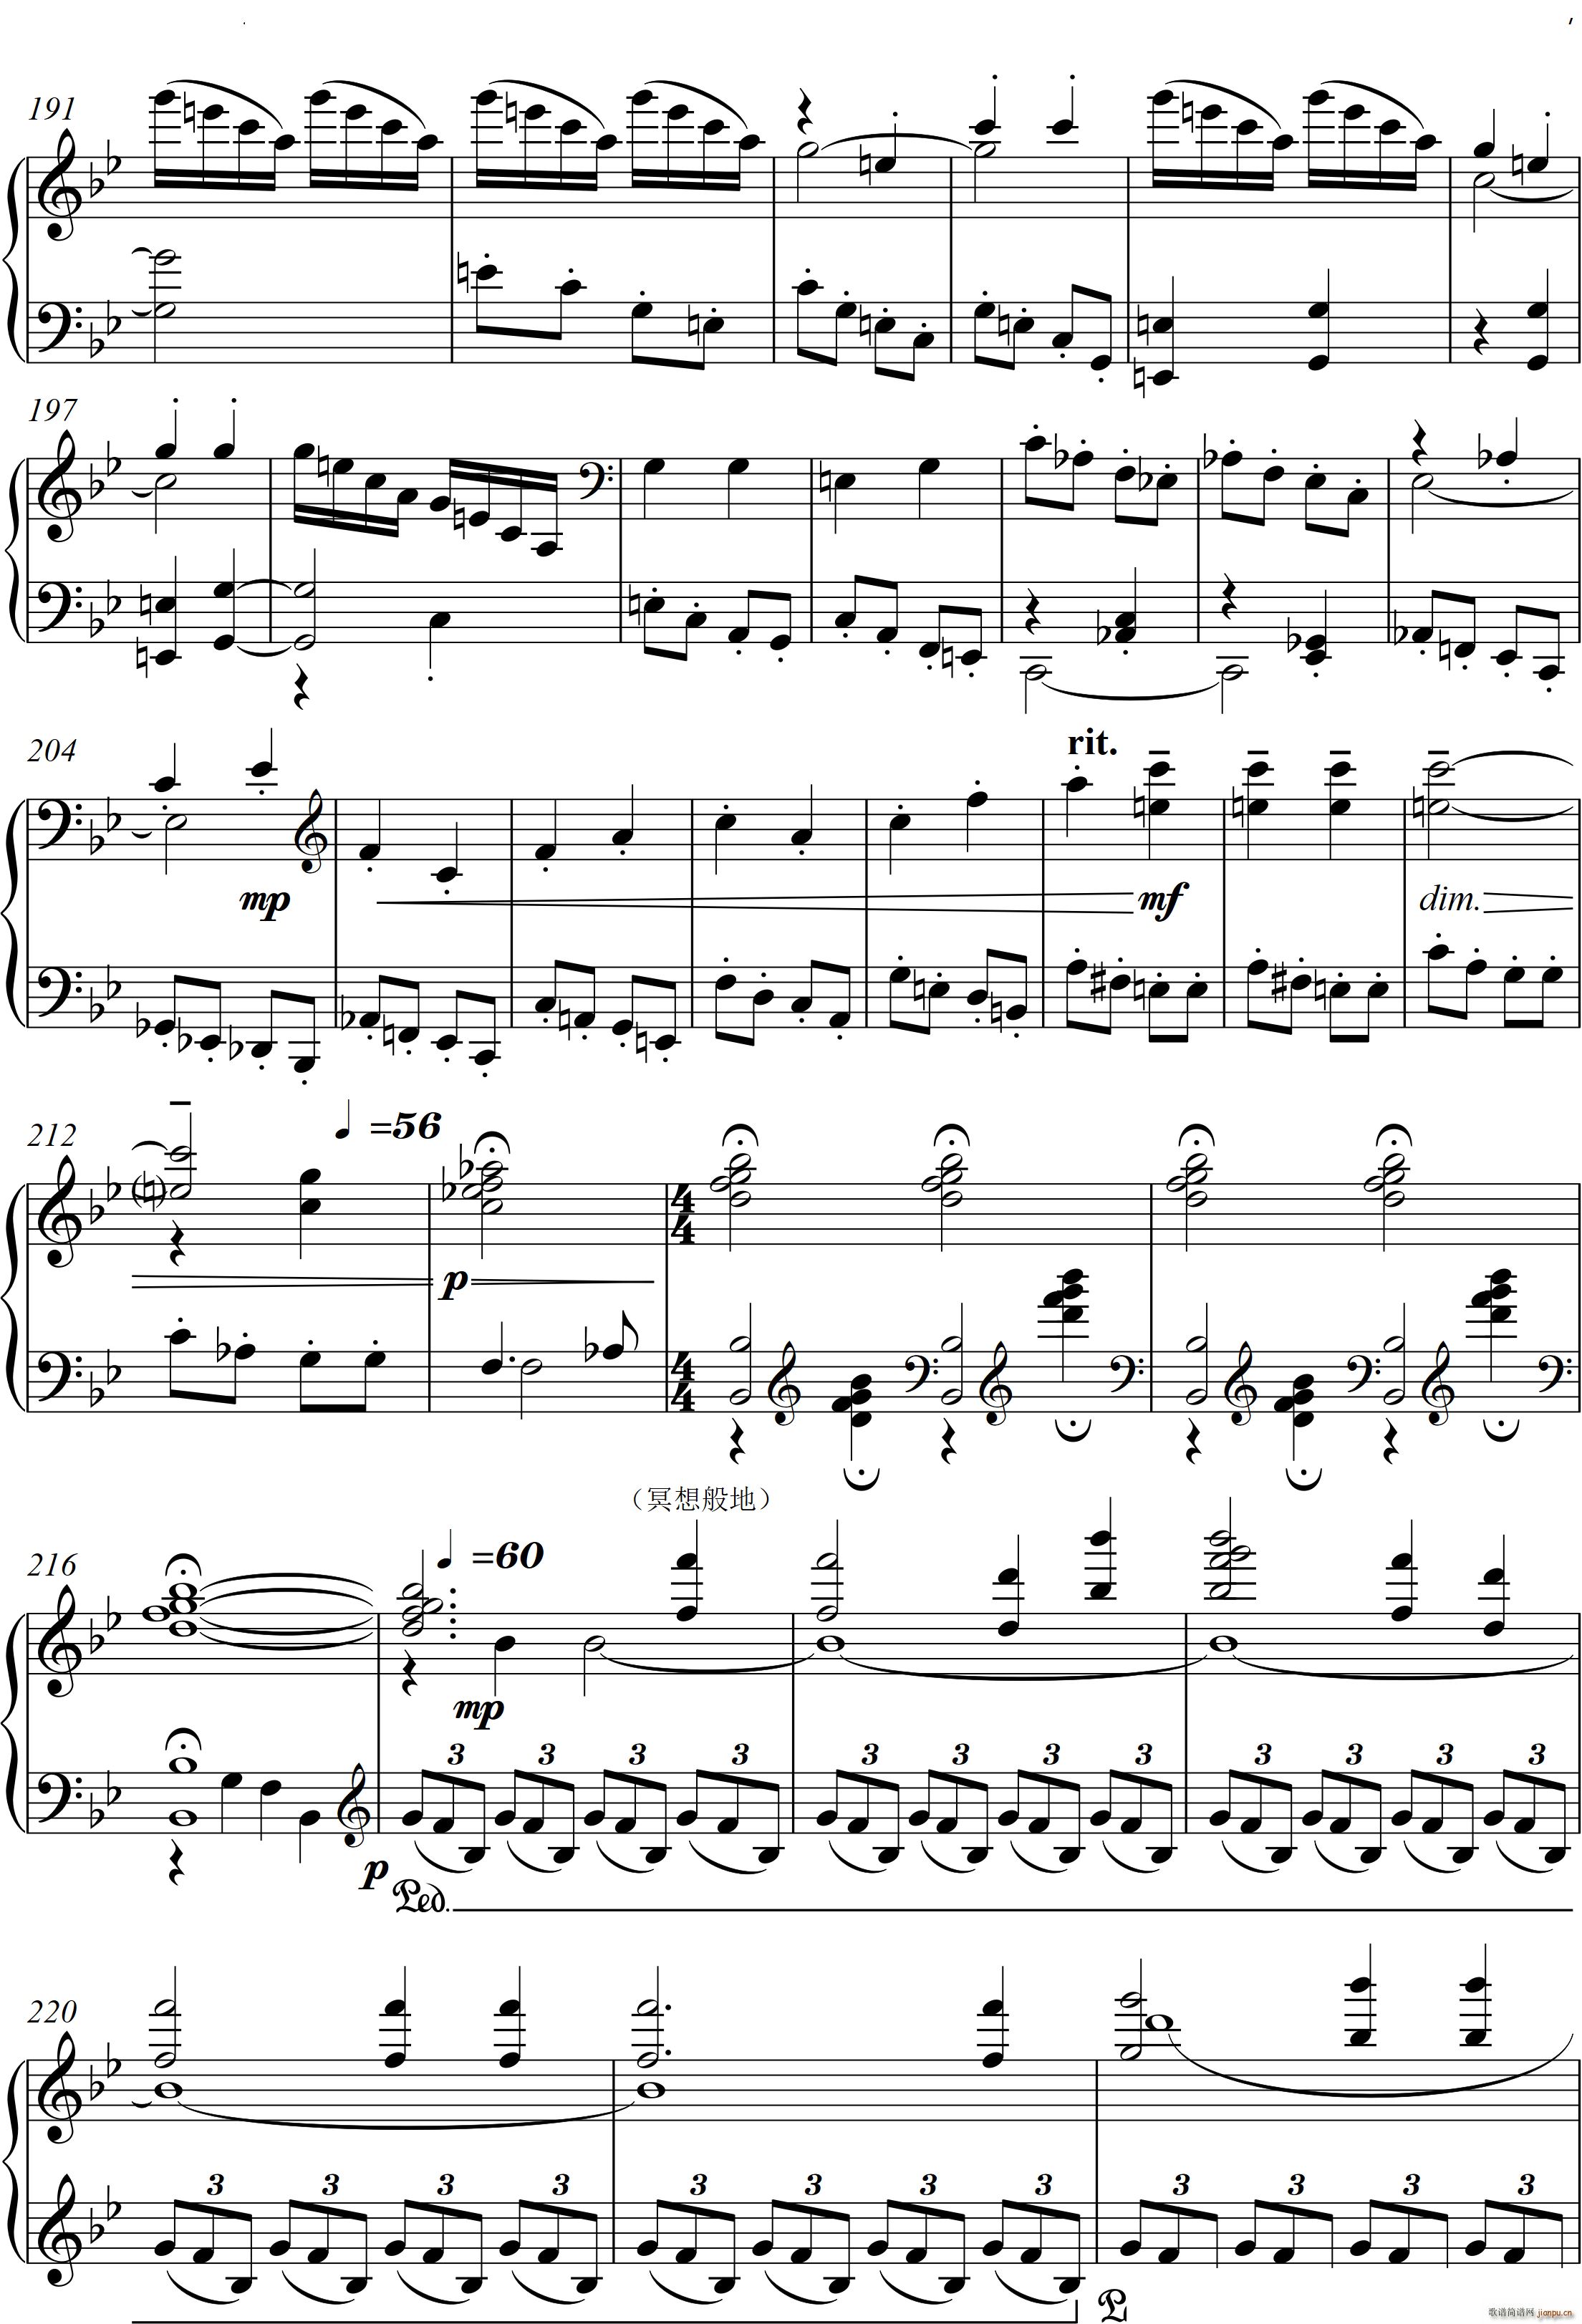 第22钢琴奏鸣曲 信仰 Piano Sonata No`22四个乐章(钢琴谱)8